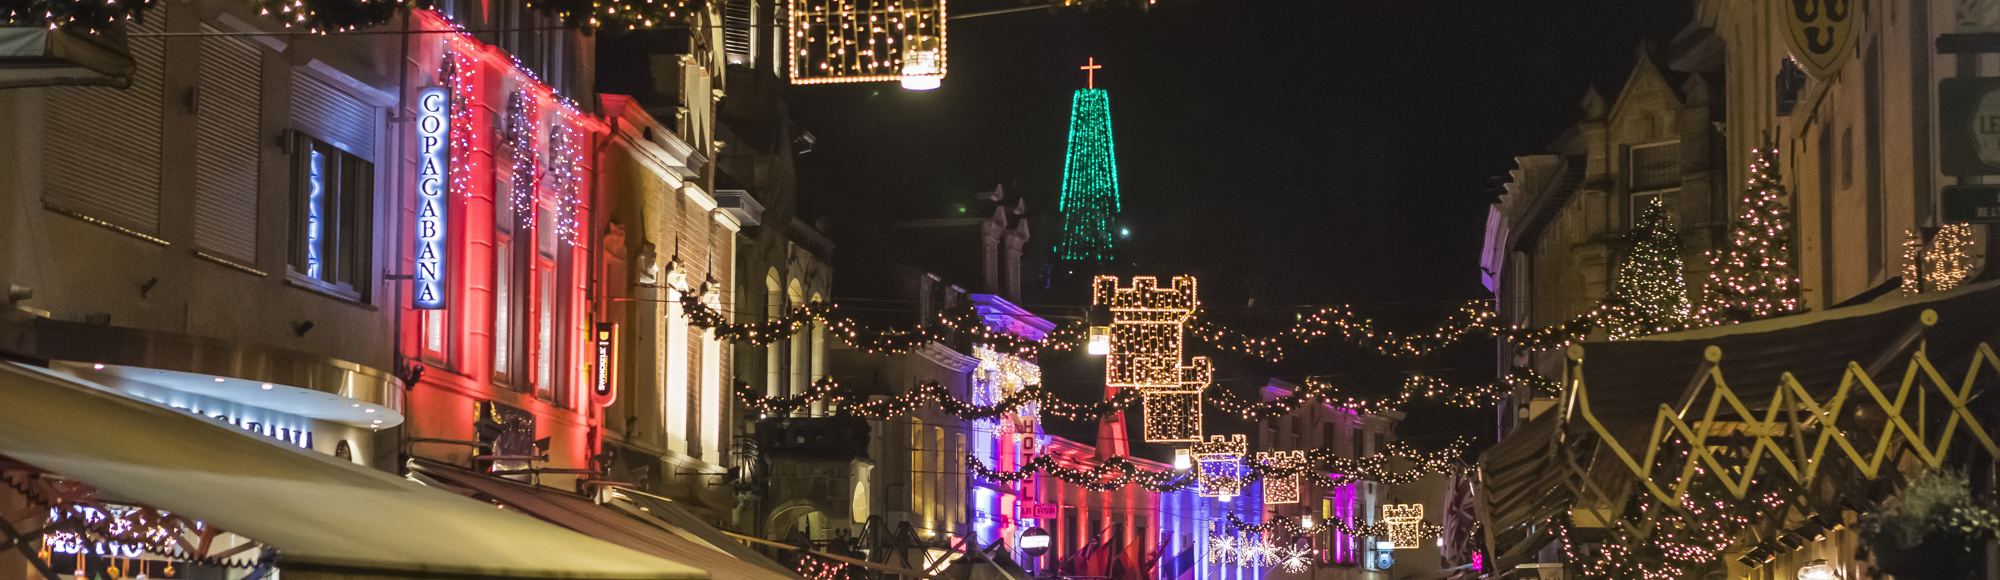 Terrassen en kerstversiering boven de Grotestraat Centrum tijdens Kerststad Valkenburg